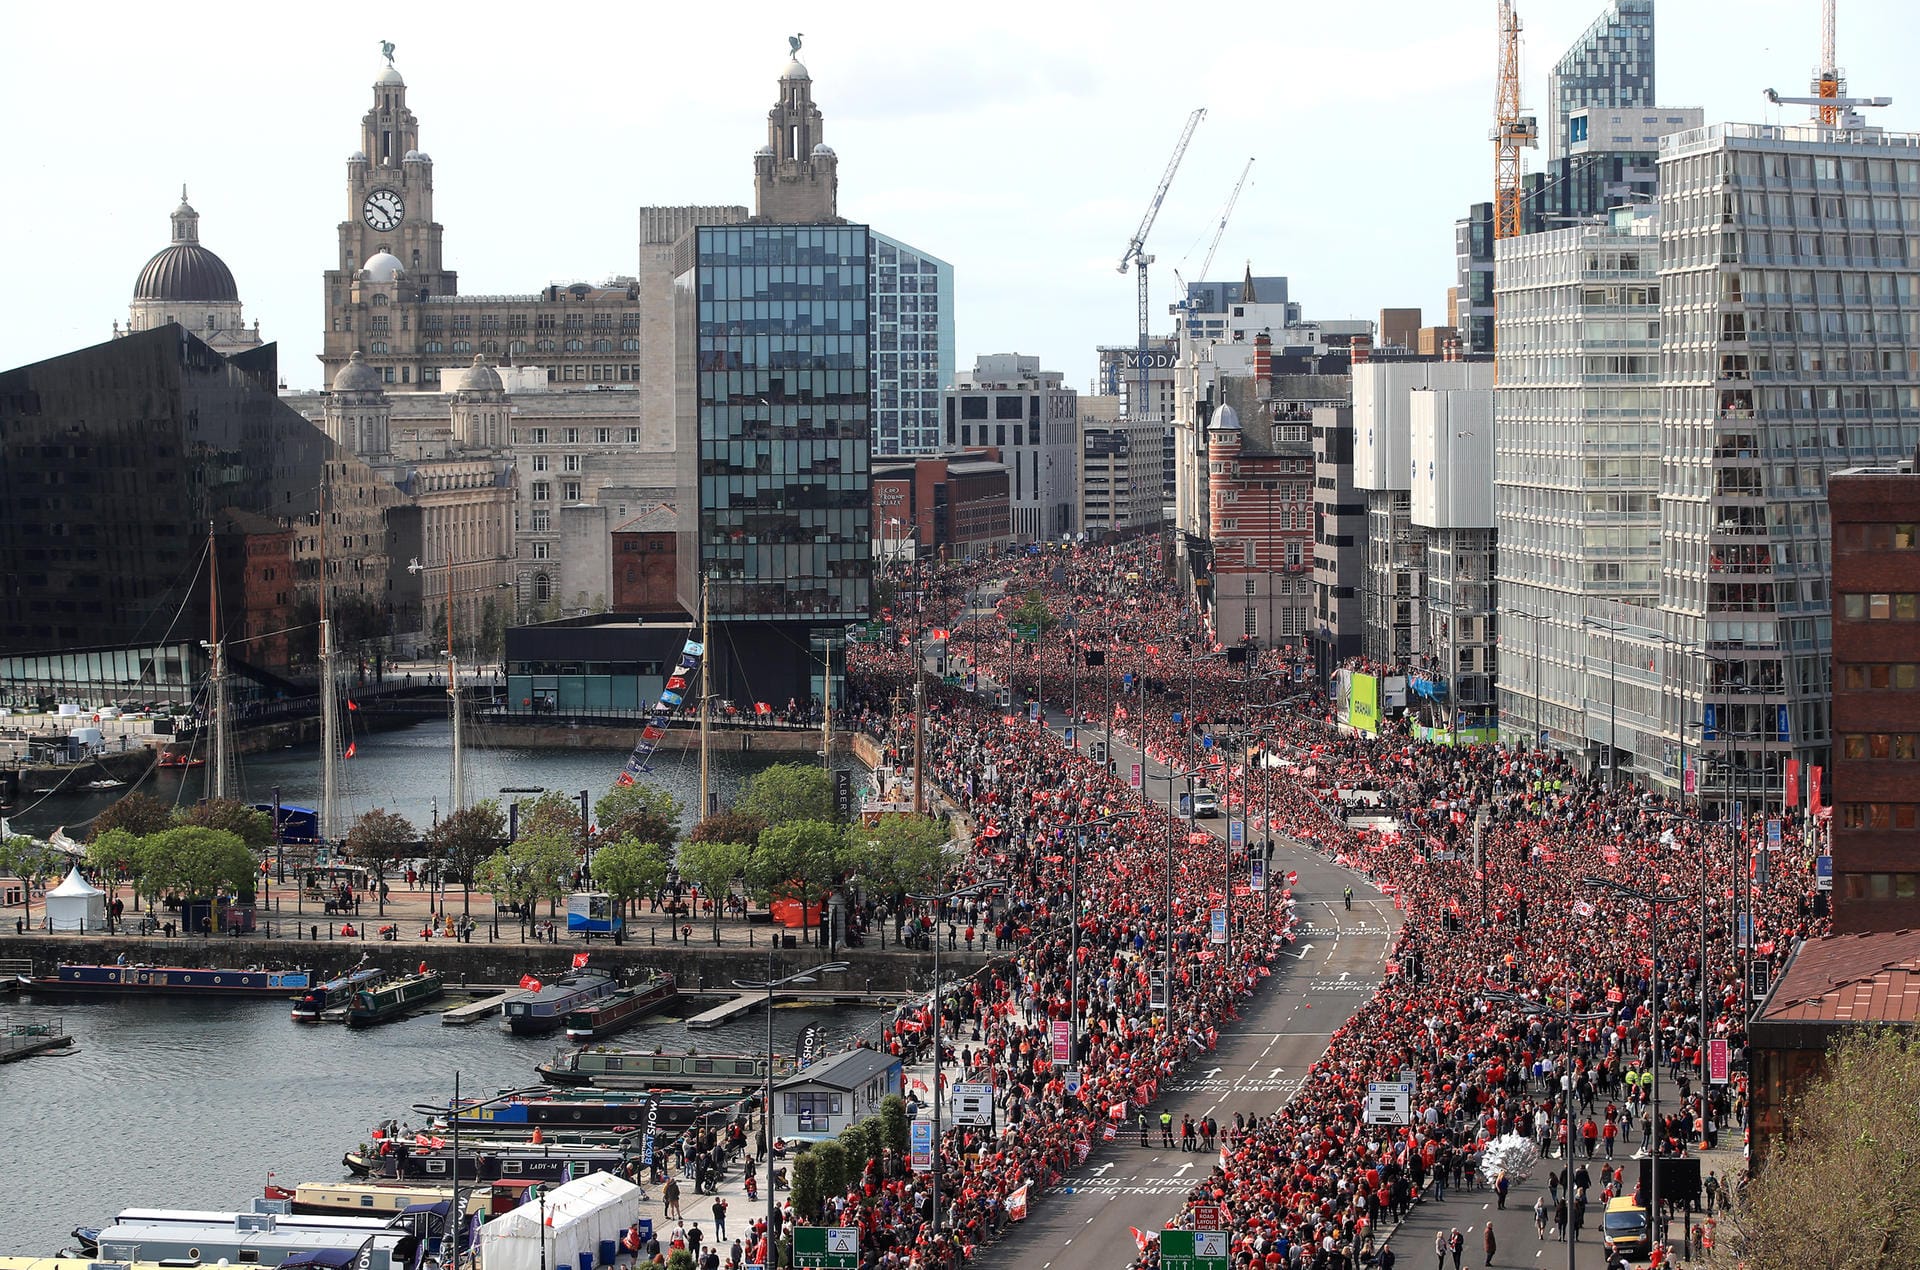 Die Stadt ist gut gefüllt. Halb Liverpool ist auf den Beinen, um seine Helden zu feiern.